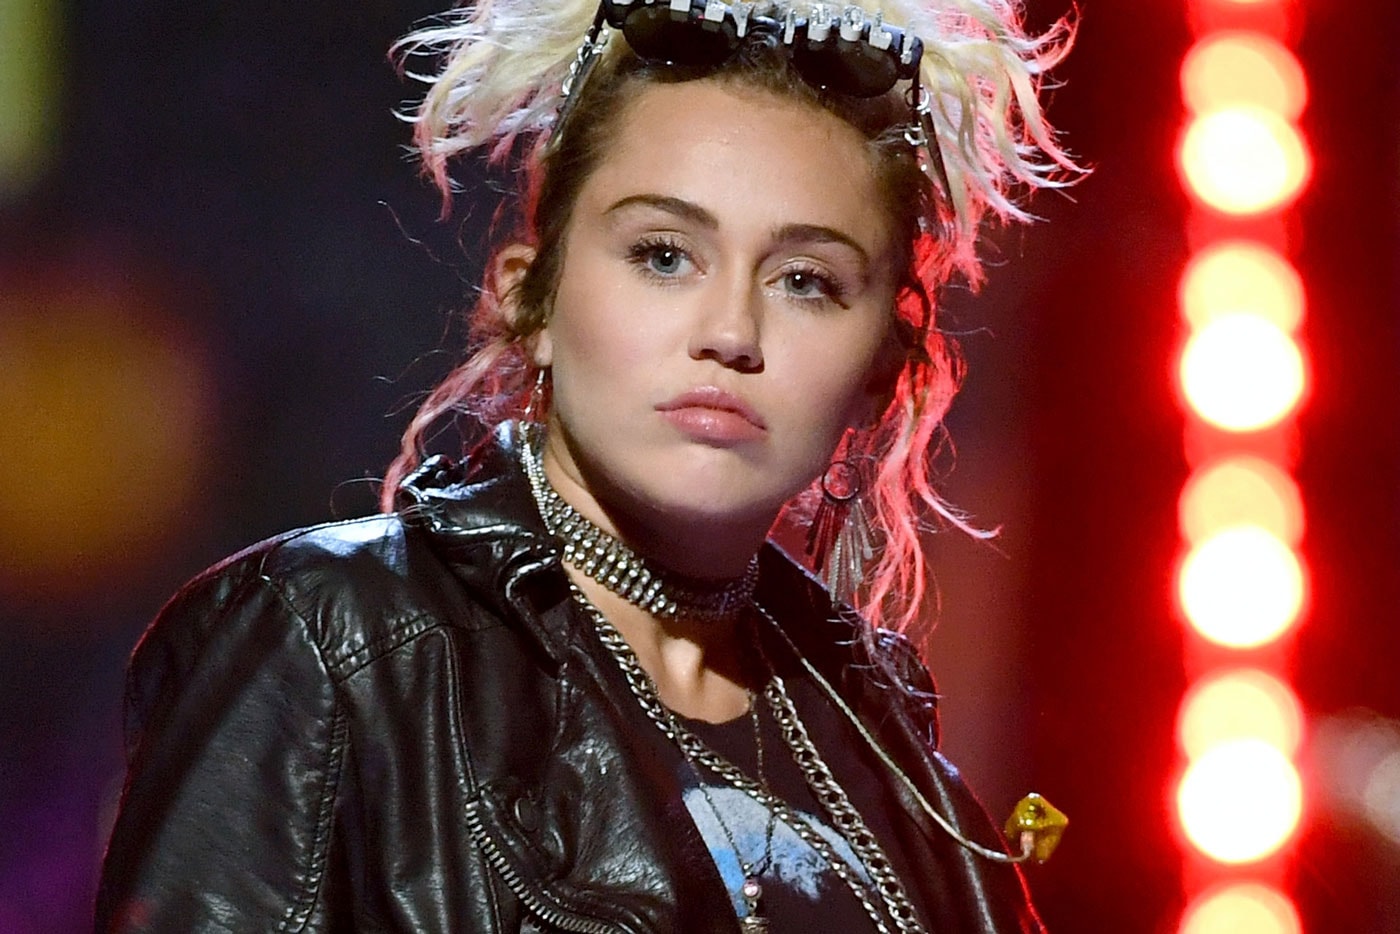 Miley Cyrus Shares Her Sad Christmas Song